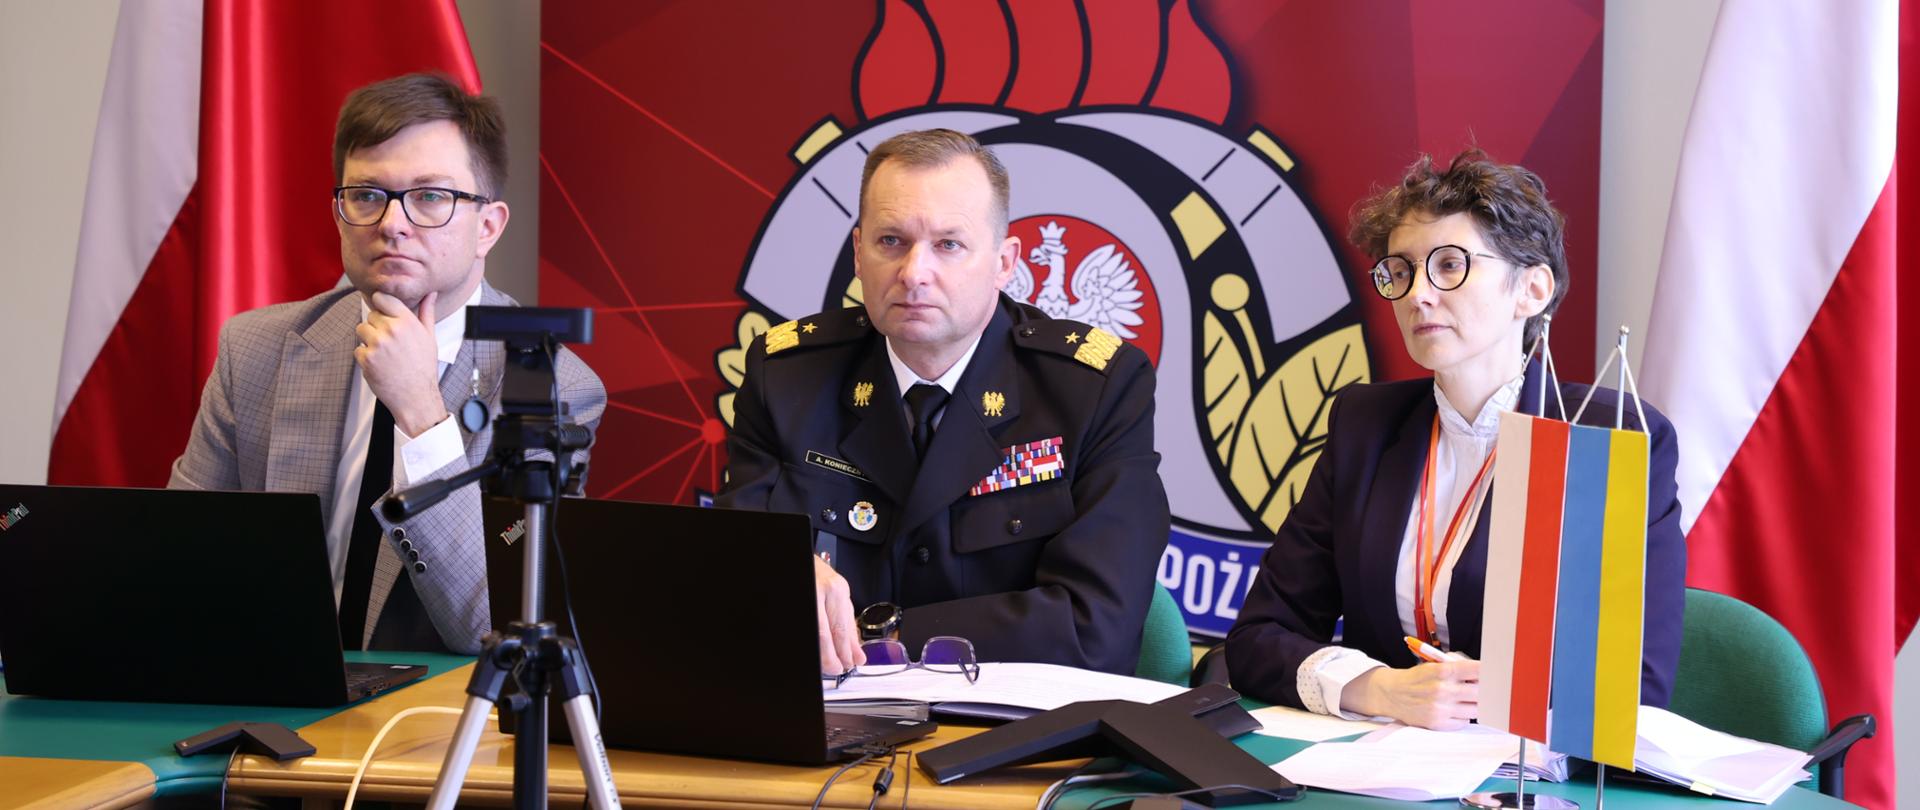 Od lewej: mężczyzna w garniturze, zastępca komendanta w mundurze generalskim oraz kobieta siedzący przy stoliku. W tle flagi polski oraz baner Państwowej Straży Pożarnej. Z boku z prawej strony na stole flagi Polski i Ukrainy